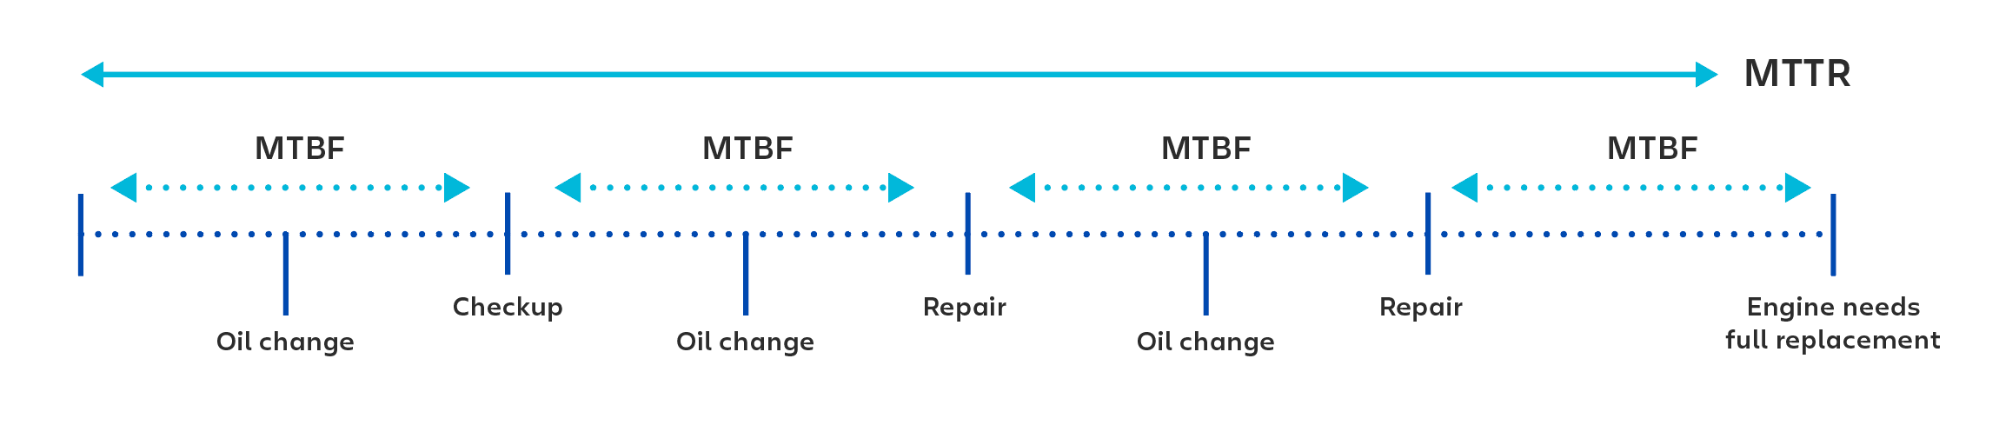 Exemplo visual de uso do MTBF (tempo médio entre falhas) no cálculo do tempo entre cada verificação ou reparo.